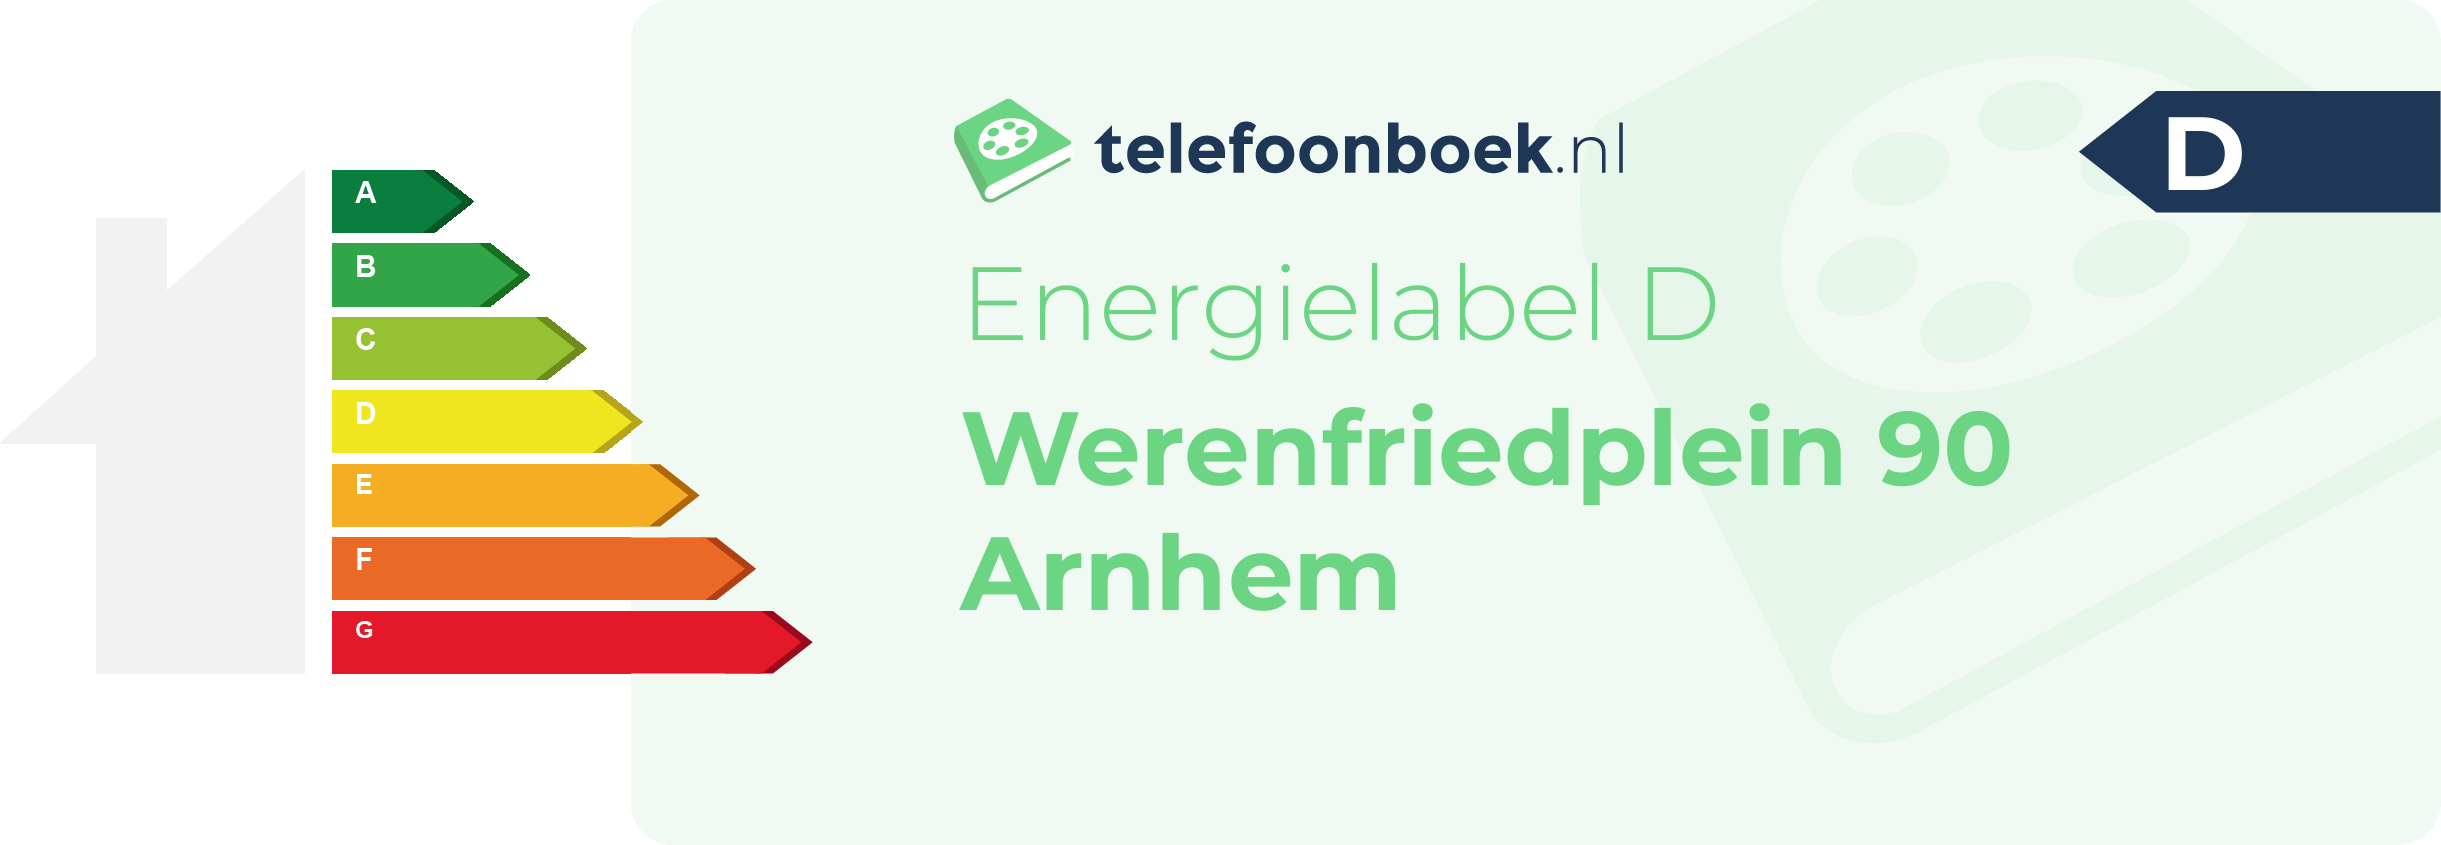 Energielabel Werenfriedplein 90 Arnhem